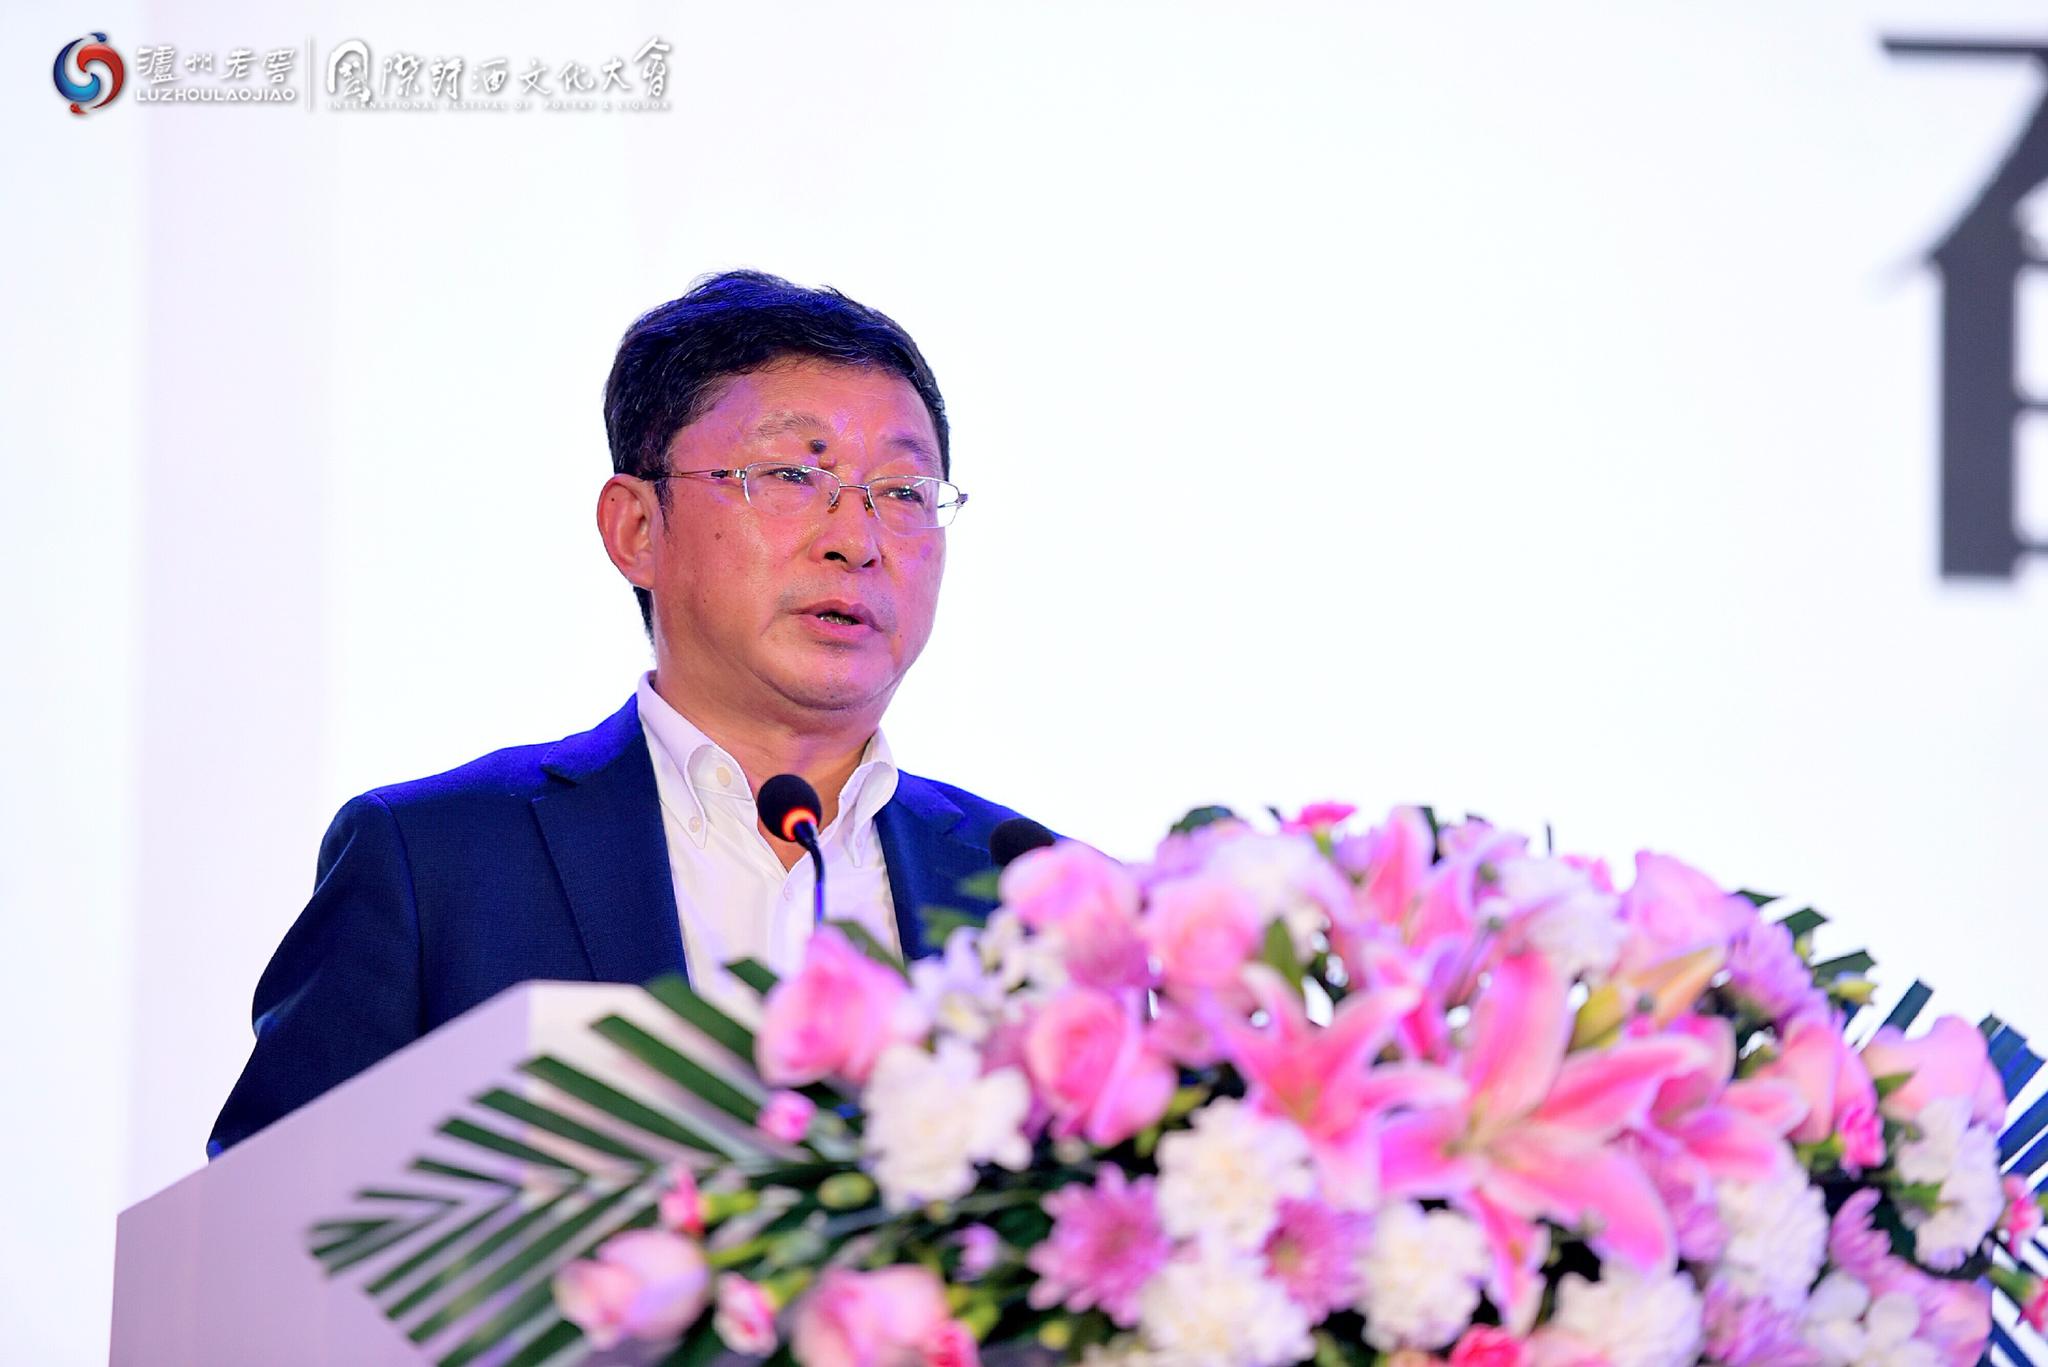 中国当代作家、四川省作家协会主席阿来在国际诗酒文化大会上发言